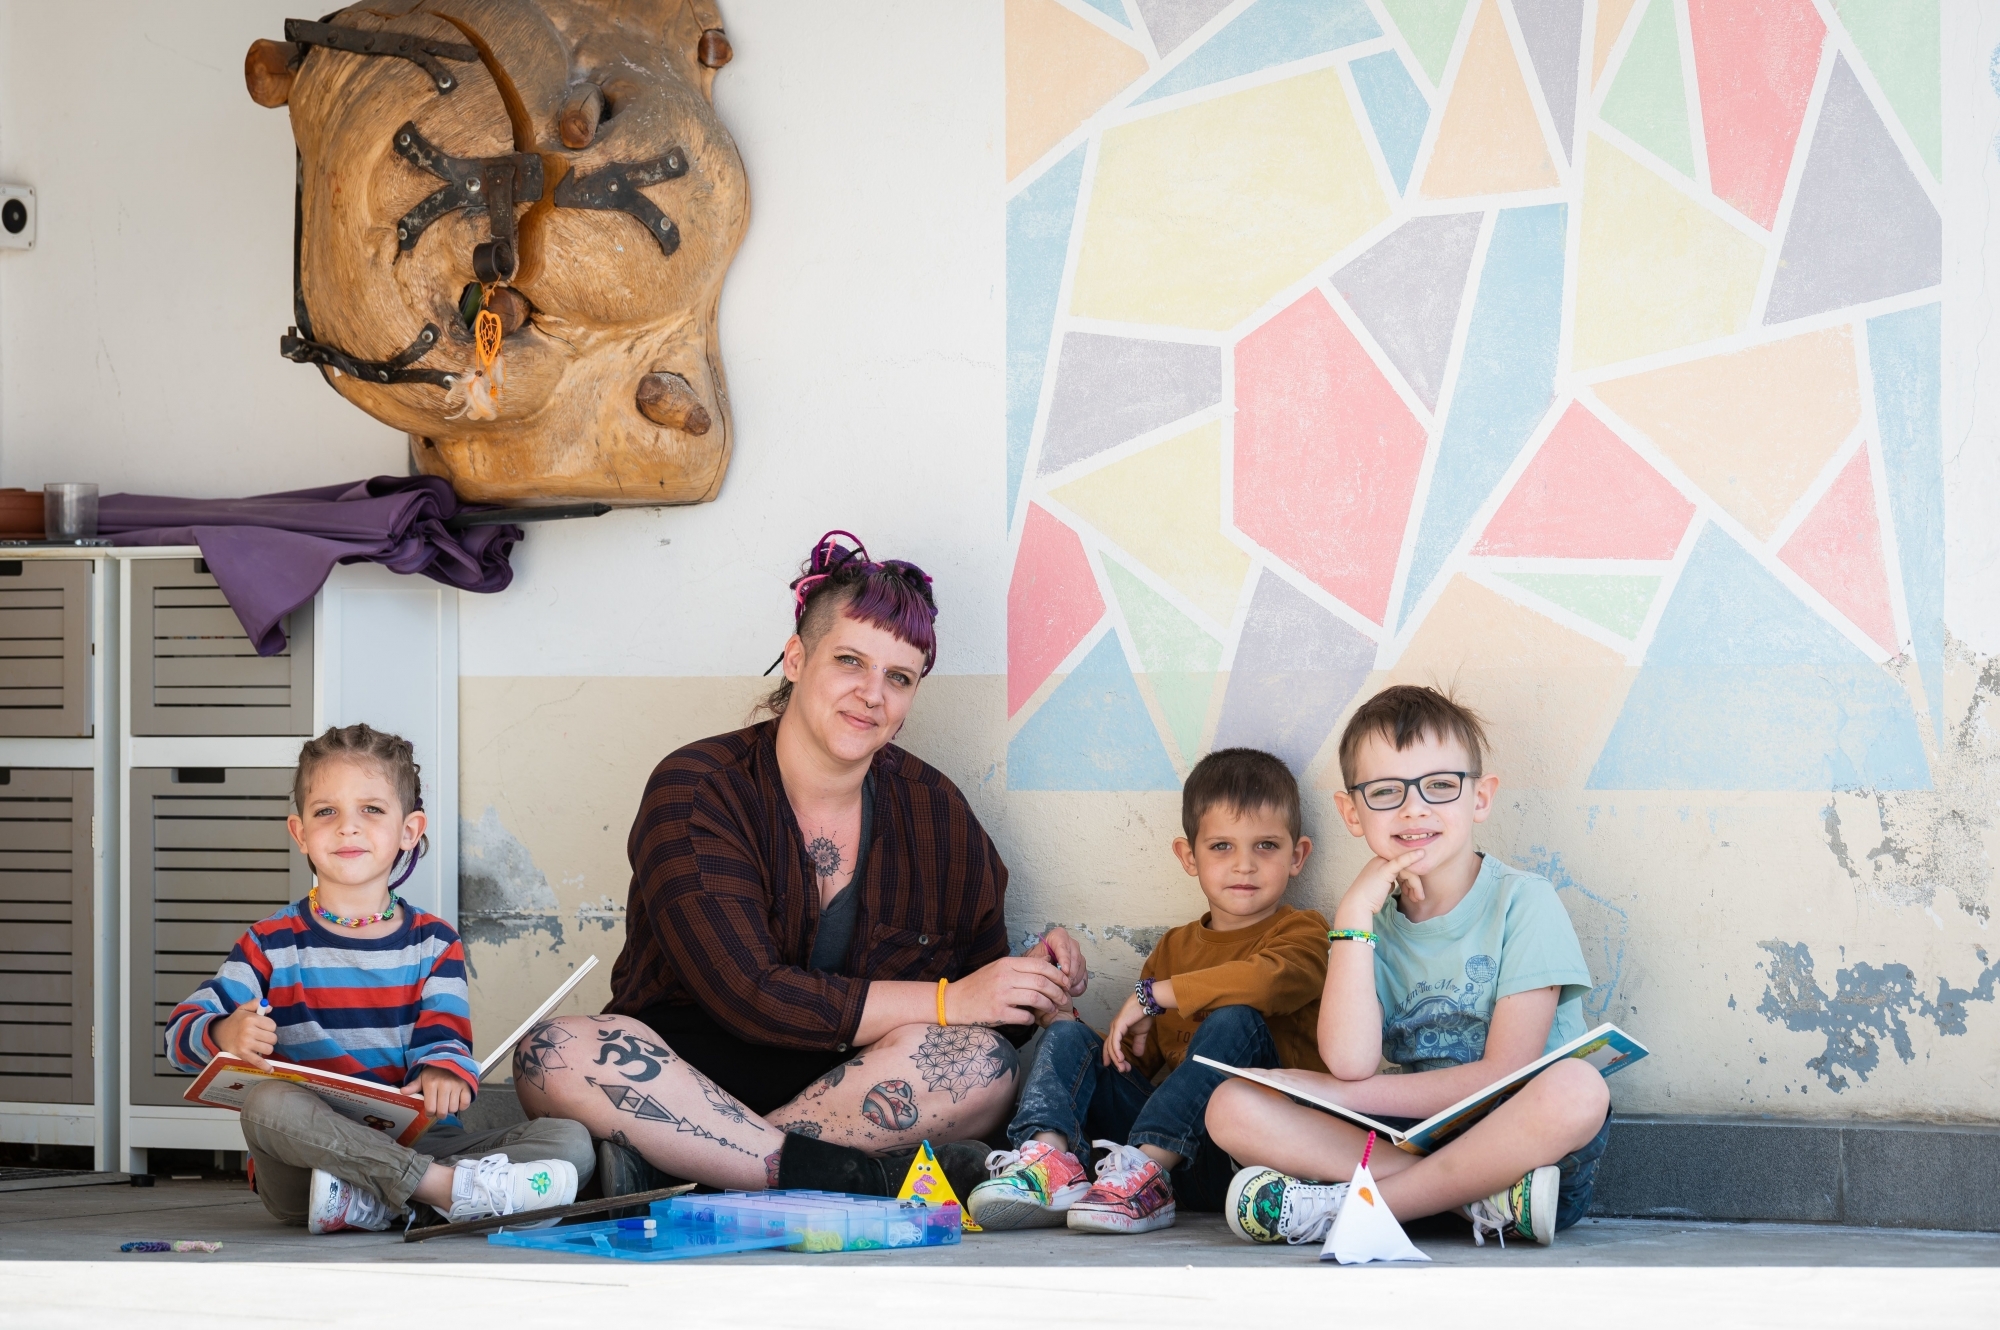 Julie a décidé de privilégier des activités ludiques avec ses enfants encore scolarisés, (de gauche à droite) Clément, Louis et Esteban. Comme dessiner une fresque.